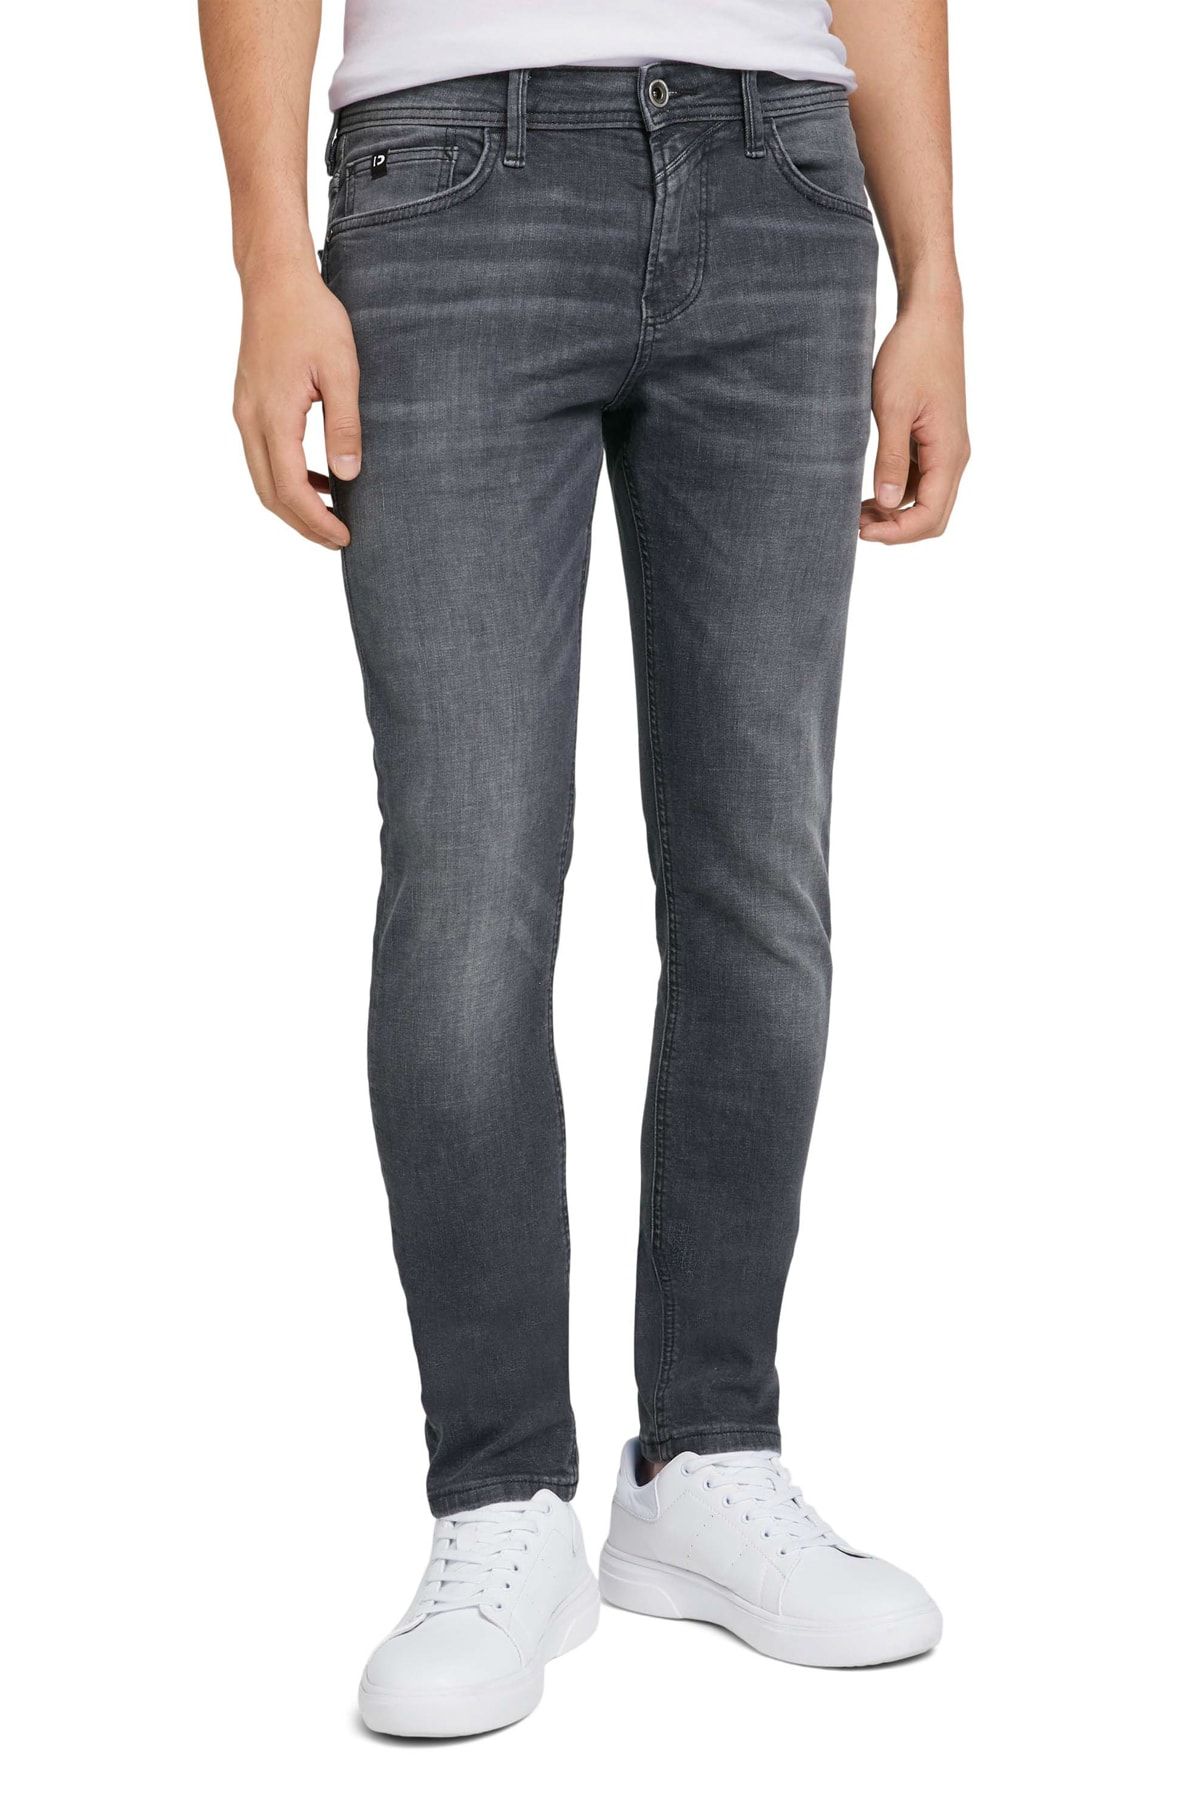 Tom Tailor Denim Jeans - Gray - Skinny - Trendyol